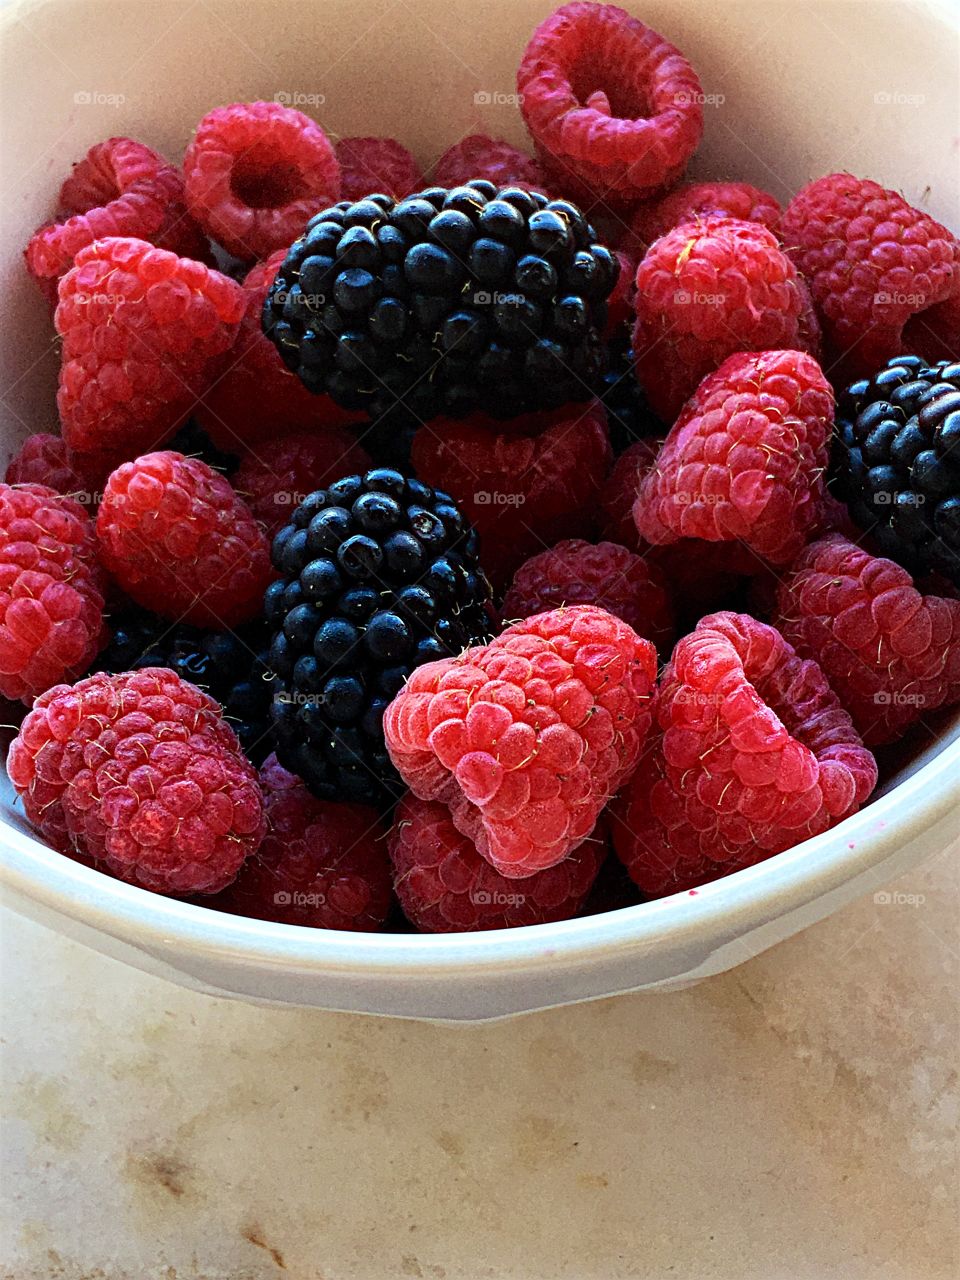 Raspberries and blackberries in bowl